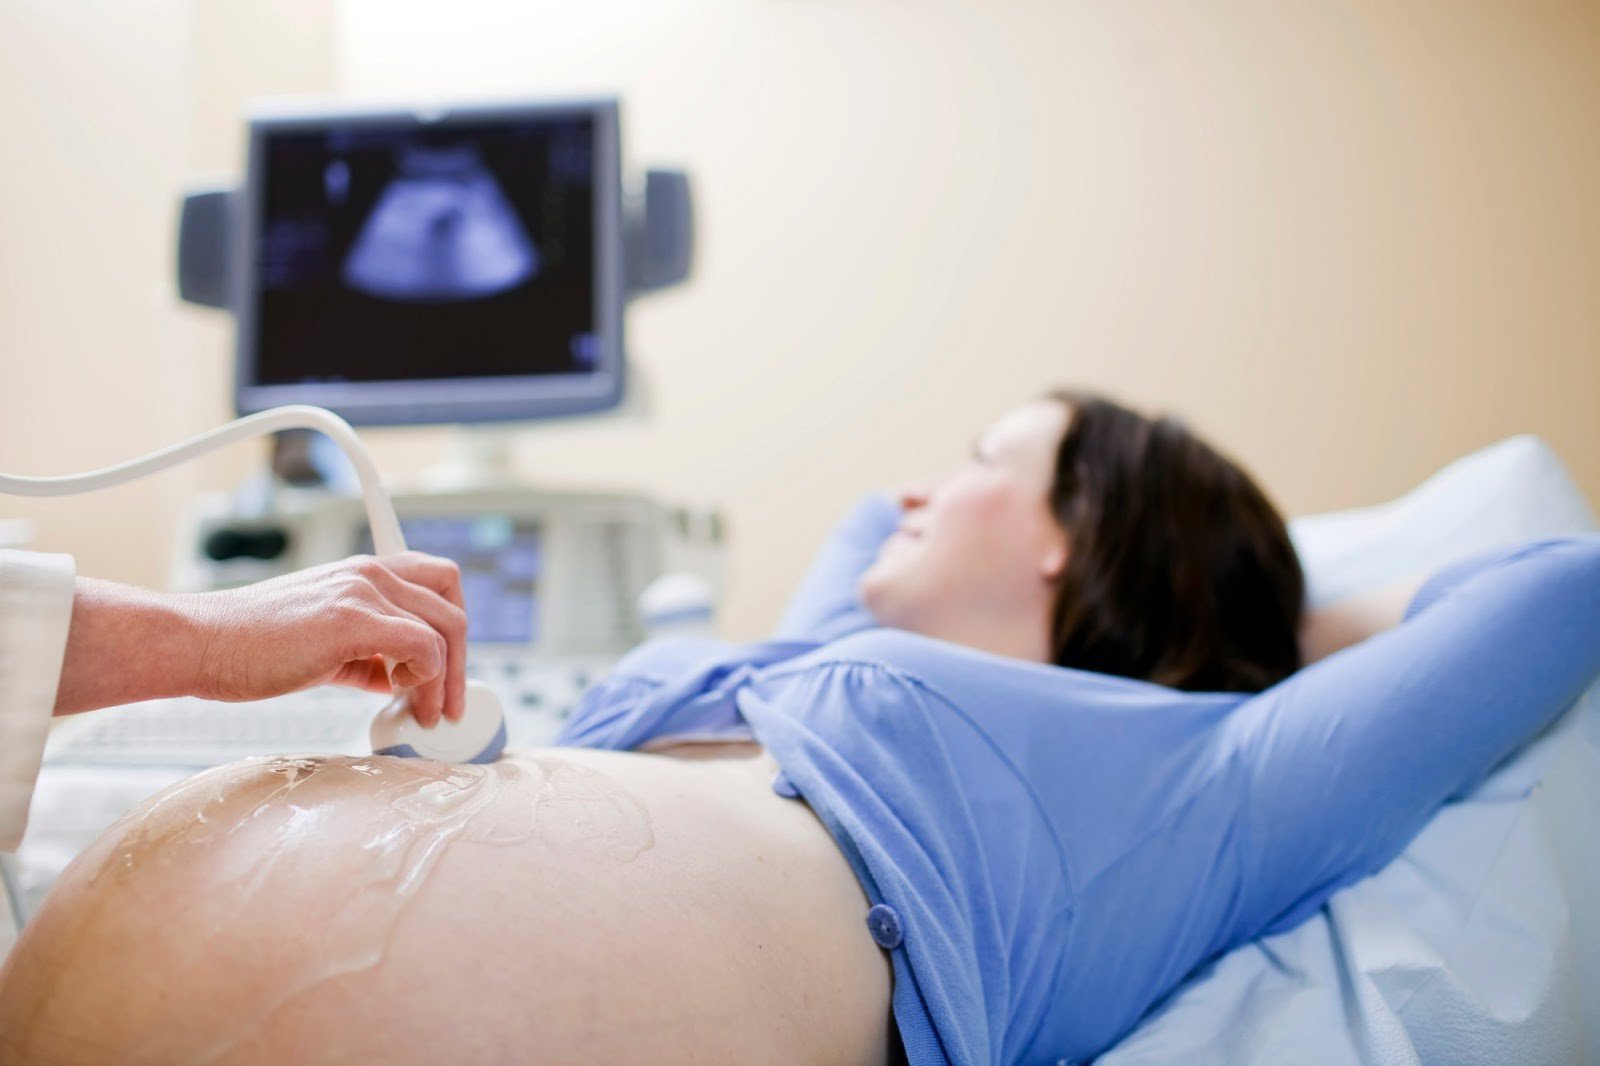 Siêu âm tầm soát dị tật thai nhi thường kéo dài khoảng 15-30 phútSiêu âm tầm soát dị tật thai nhi thường kéo dài khoảng 15-30 phút